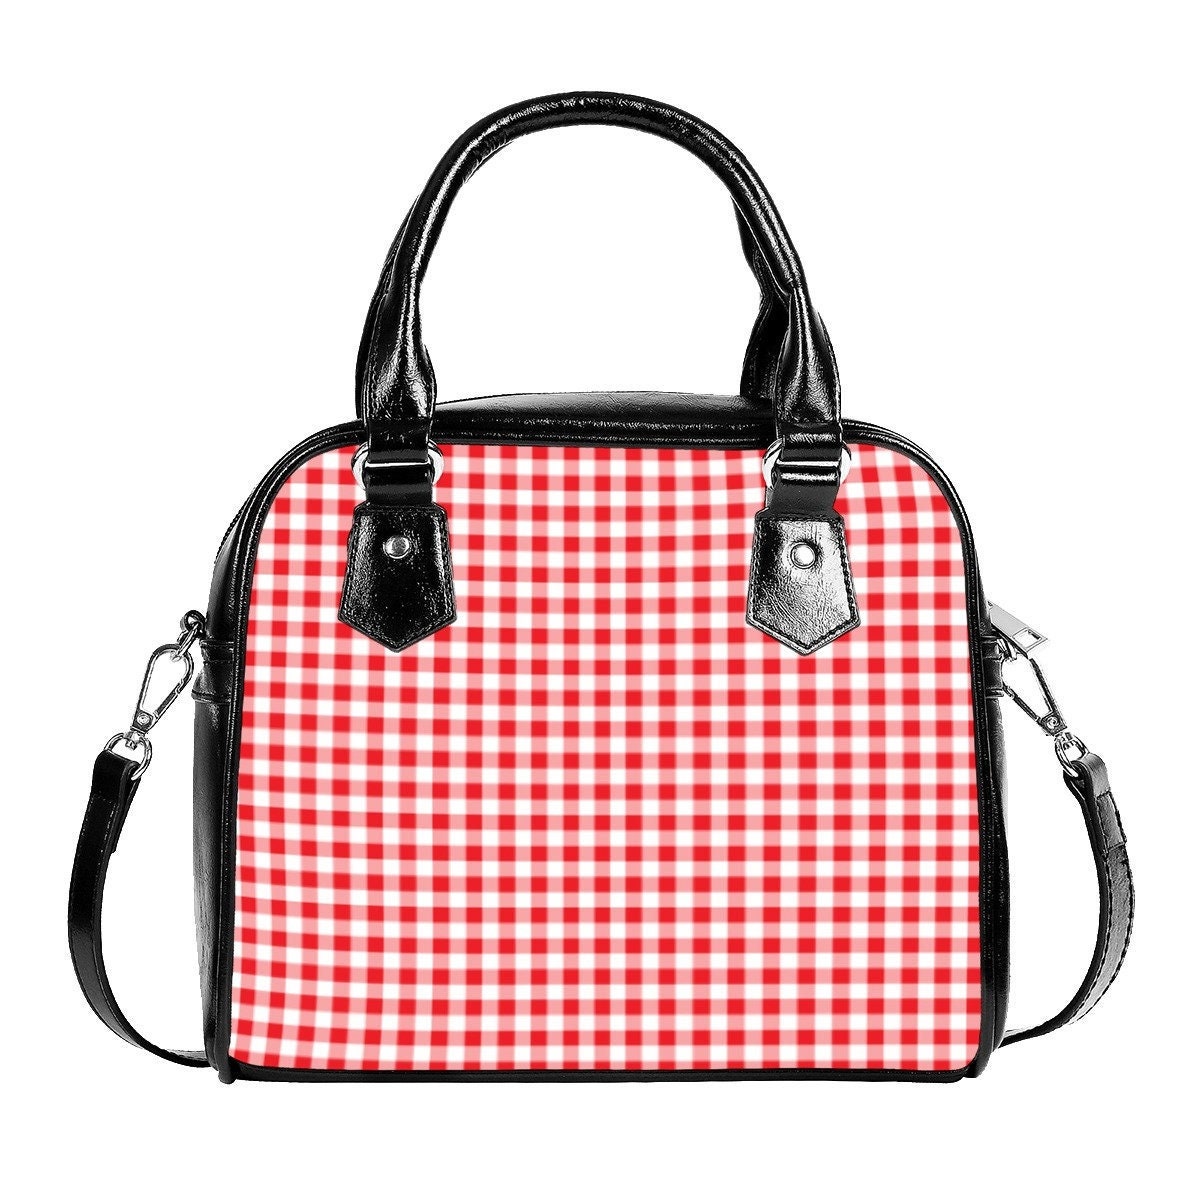 Rote Gingham-Handtasche, 50er-Jahre-Stil-Tasche, rote Handtasche, Retro-Tasche, Retro-Handtasche, rote Gingham-Geldbörse, Damentaschen, Damen-Geldbörse, kleine Handtasche